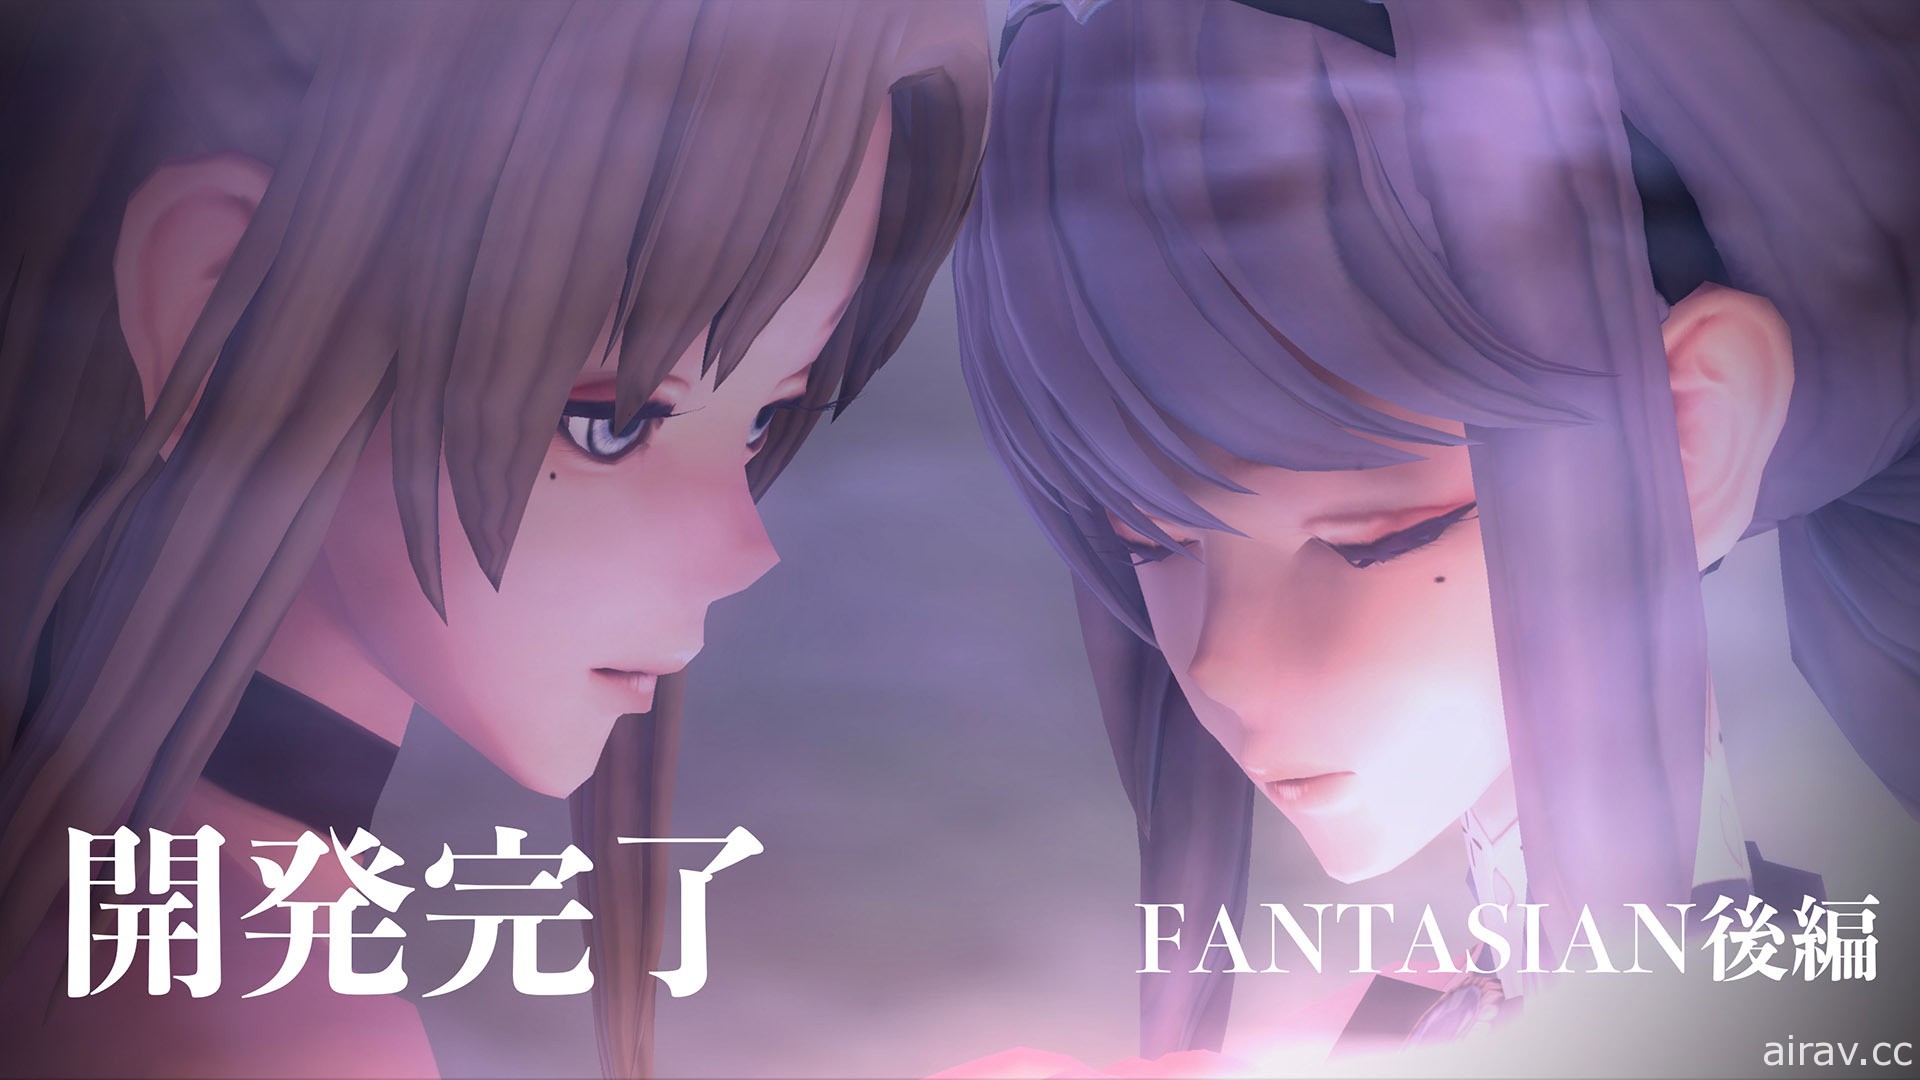 坂口博信宣布《Fantasian》后篇已开发完成 推出时间尚未确定